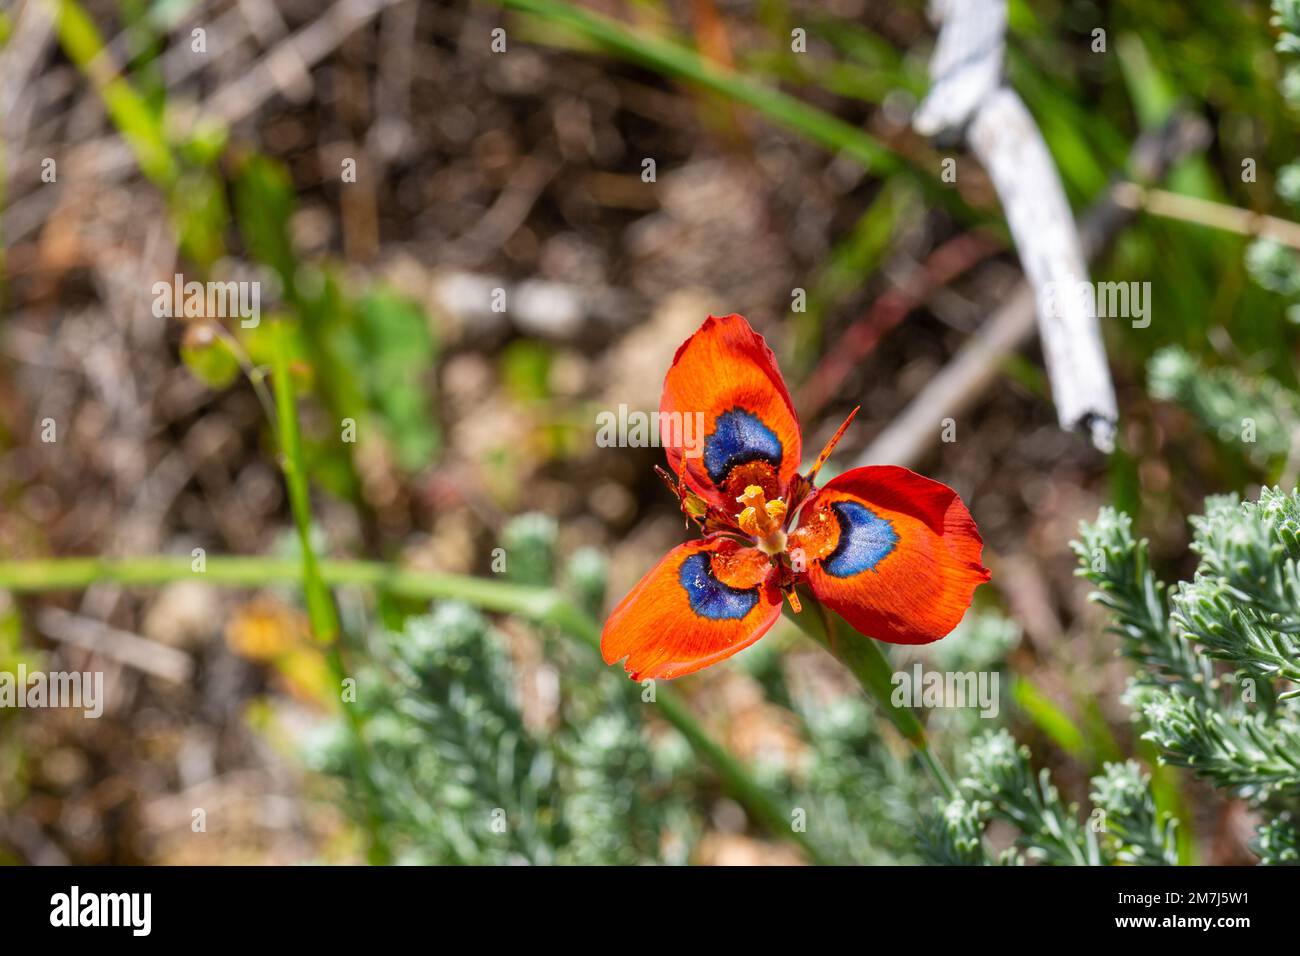 La plante rare à fleurs rouges Moraea tulbaghensis, située dans l'habitat naturel près de Tulbagh, dans le Cap occidental de l'Afrique du Sud Banque D'Images